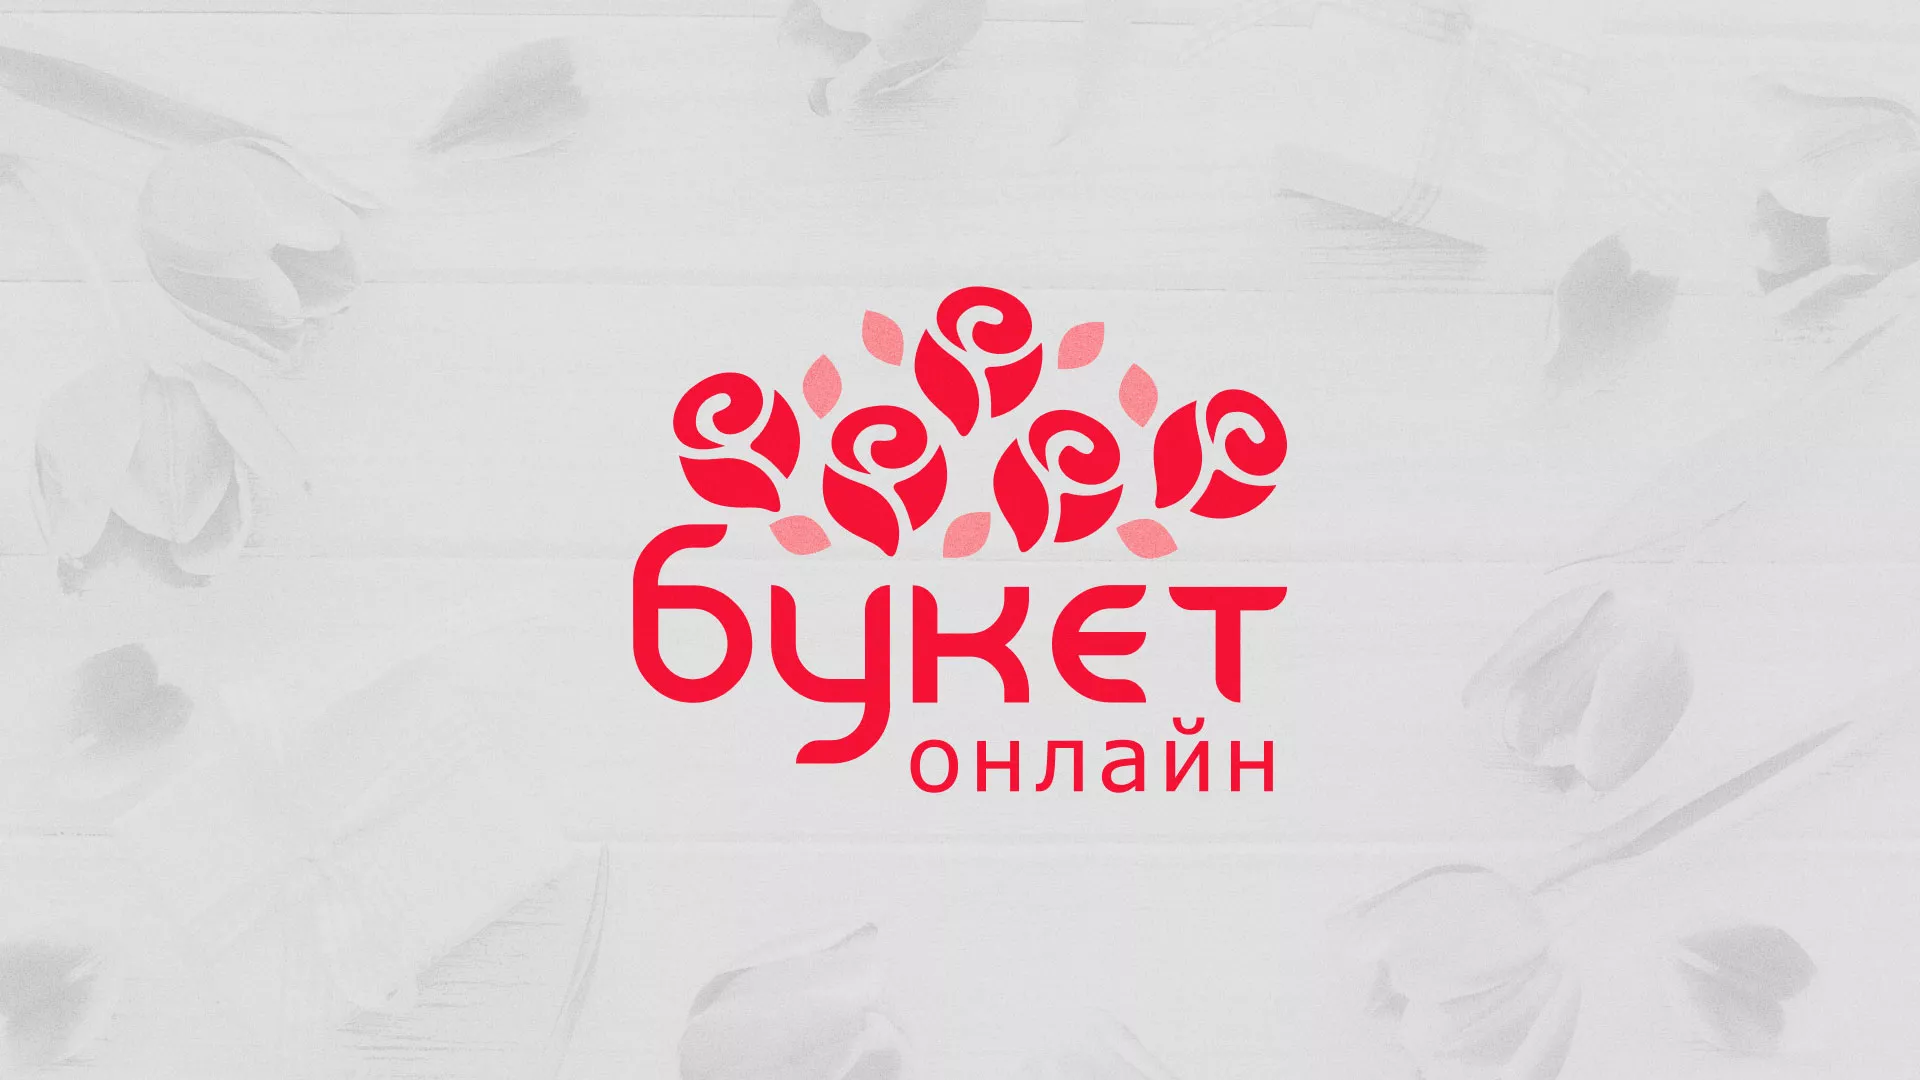 Создание интернет-магазина «Букет-онлайн» по цветам в Вяземском